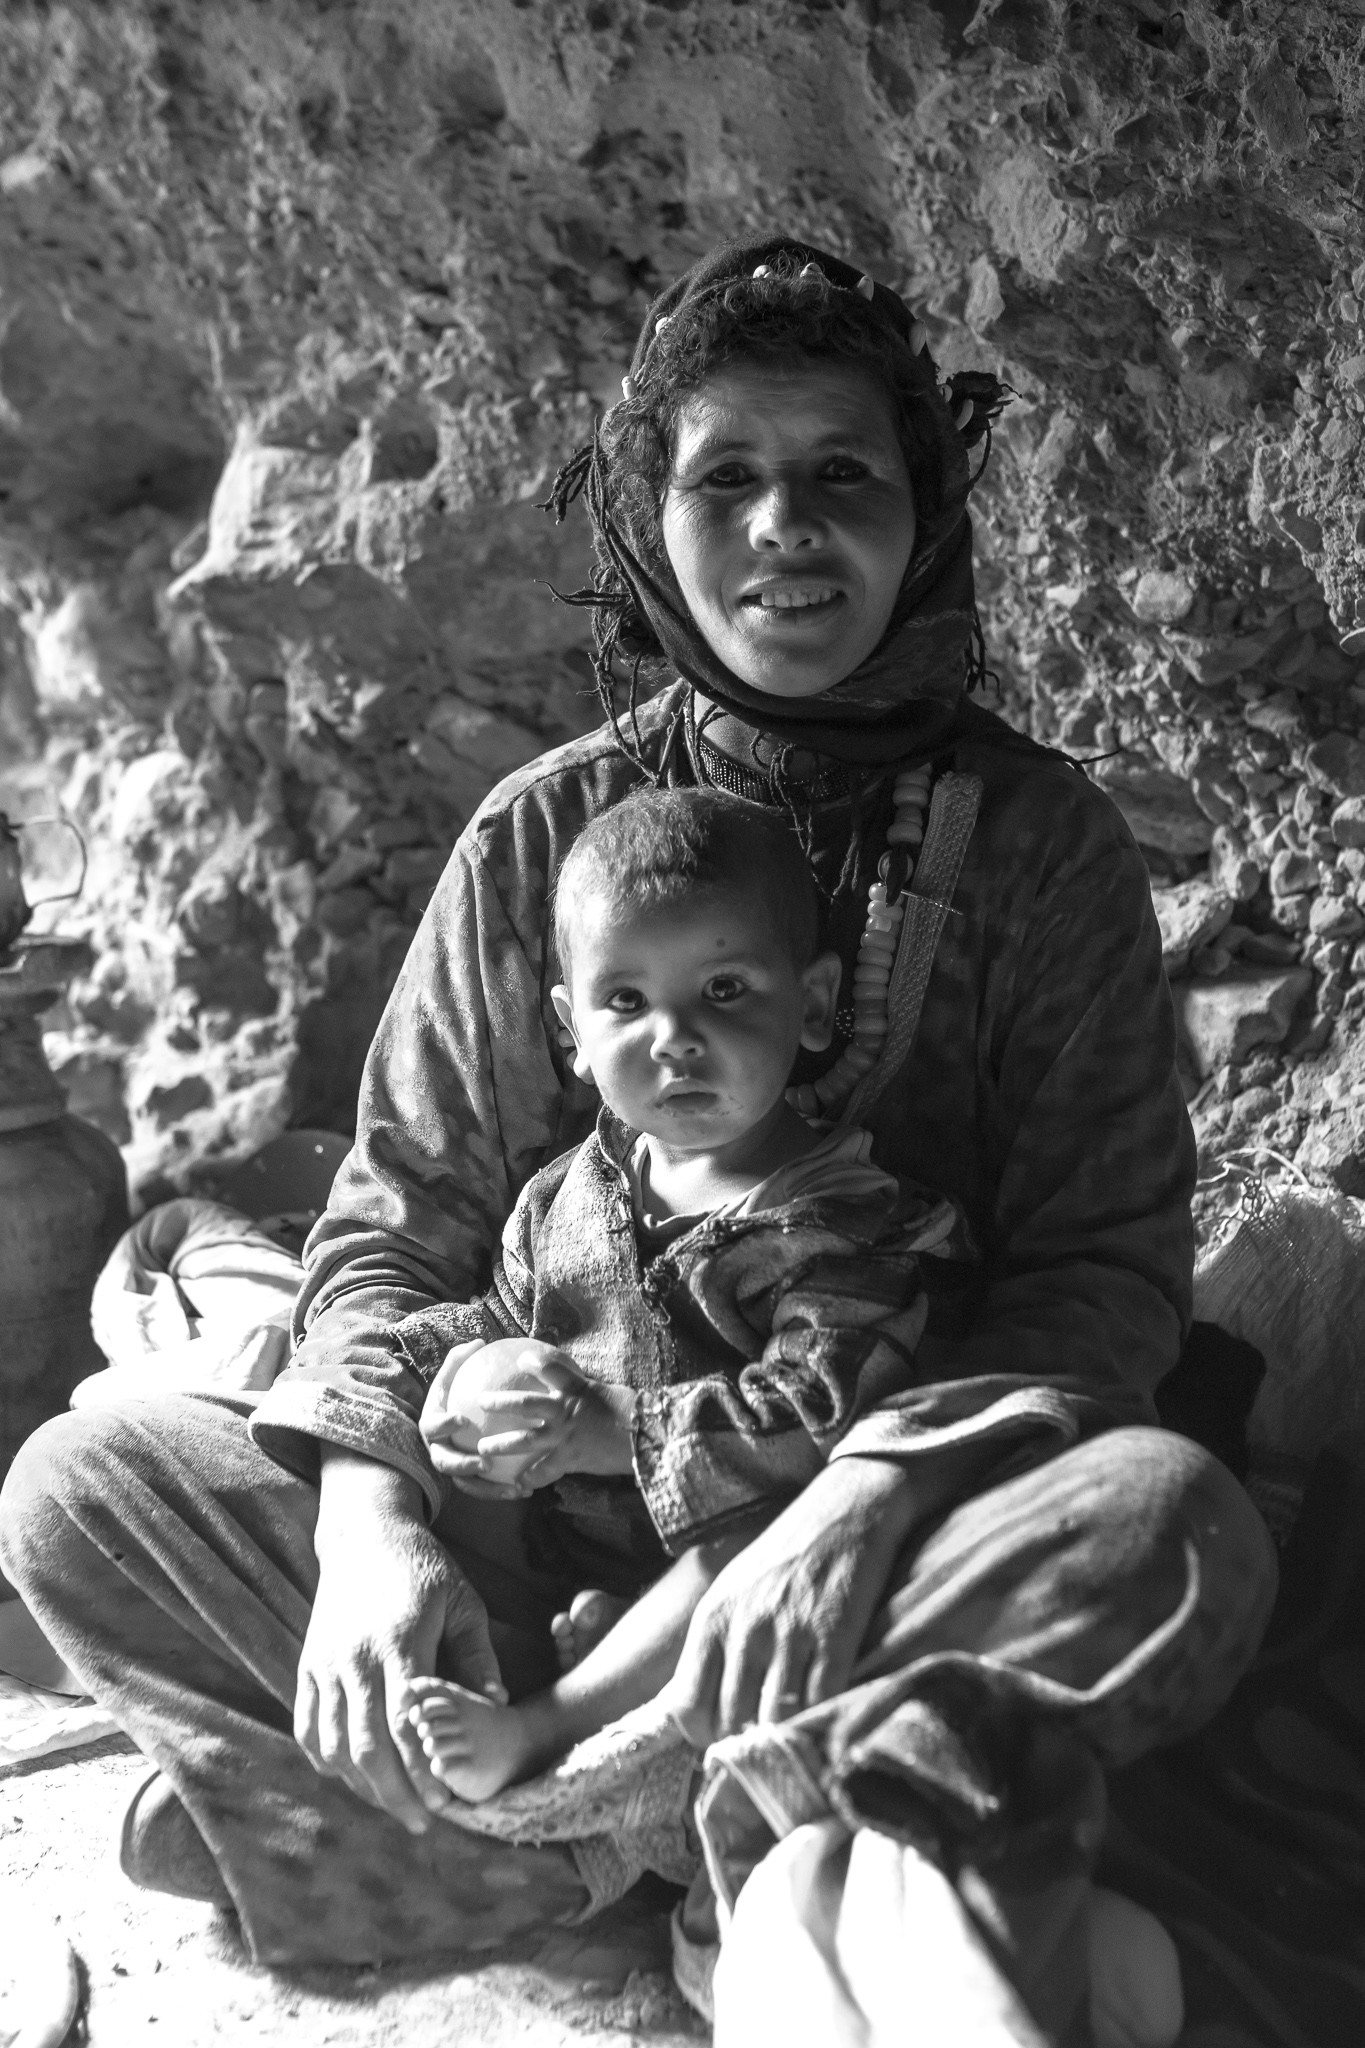 Las mujeres se suelen adornar con la ropa y los ornamentos tradicionales del pueblo Amazigh y exhiben a menudo trenzas típicas de su cultura.